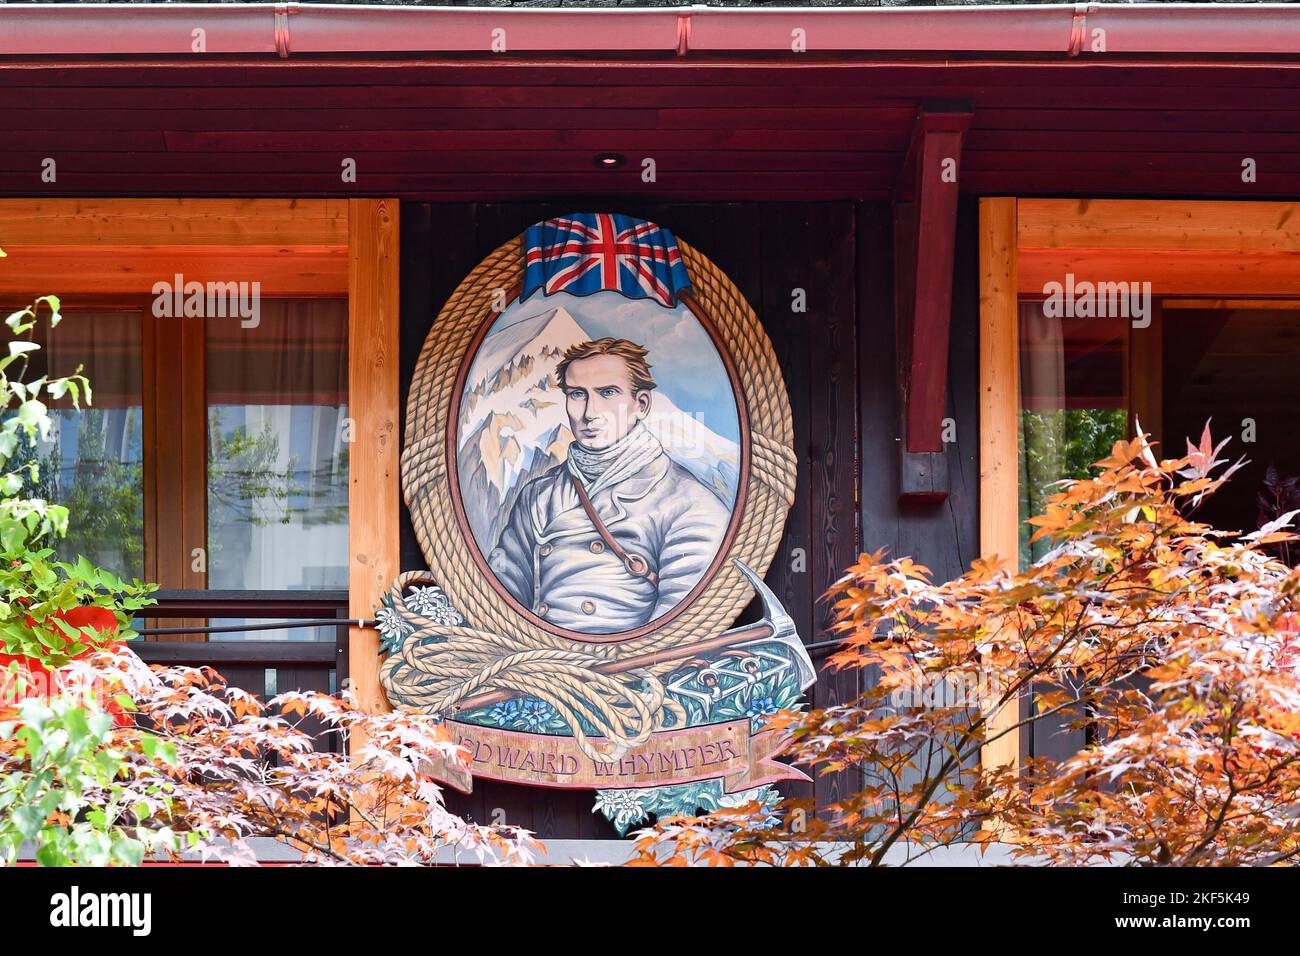 Ritratto dell'alpinista Edward Whimper dipinto sulla facciata in legno di un hotel nel centro di Chamonix, alta Savoia, Francia Foto Stock